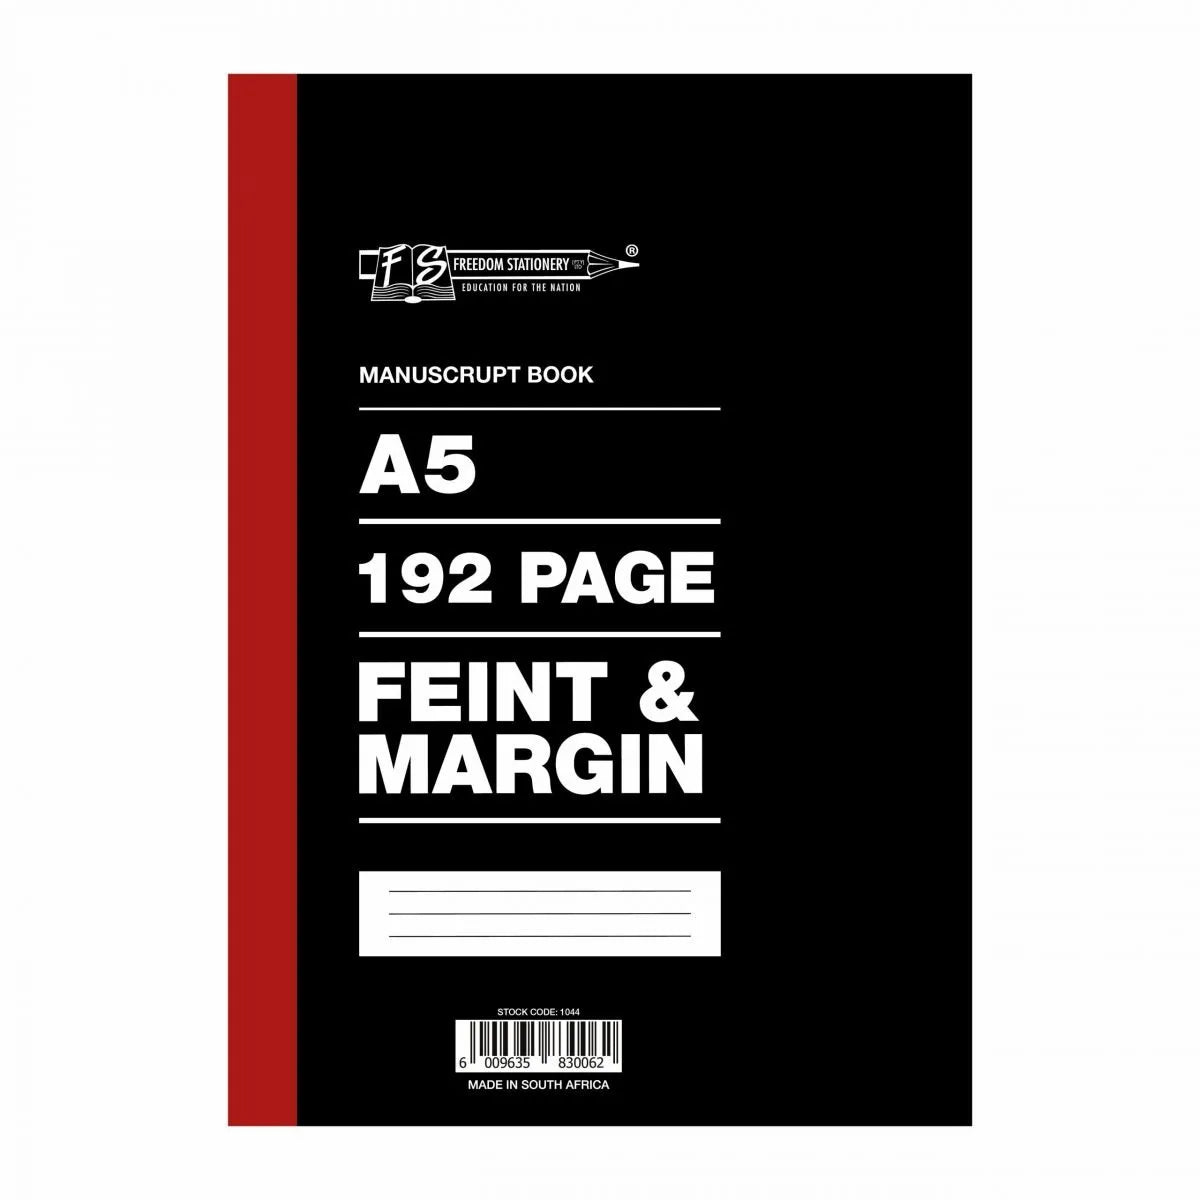 Marlin Freedom Stationery Feint & Margin A5 Manuscript Book – 192 Page